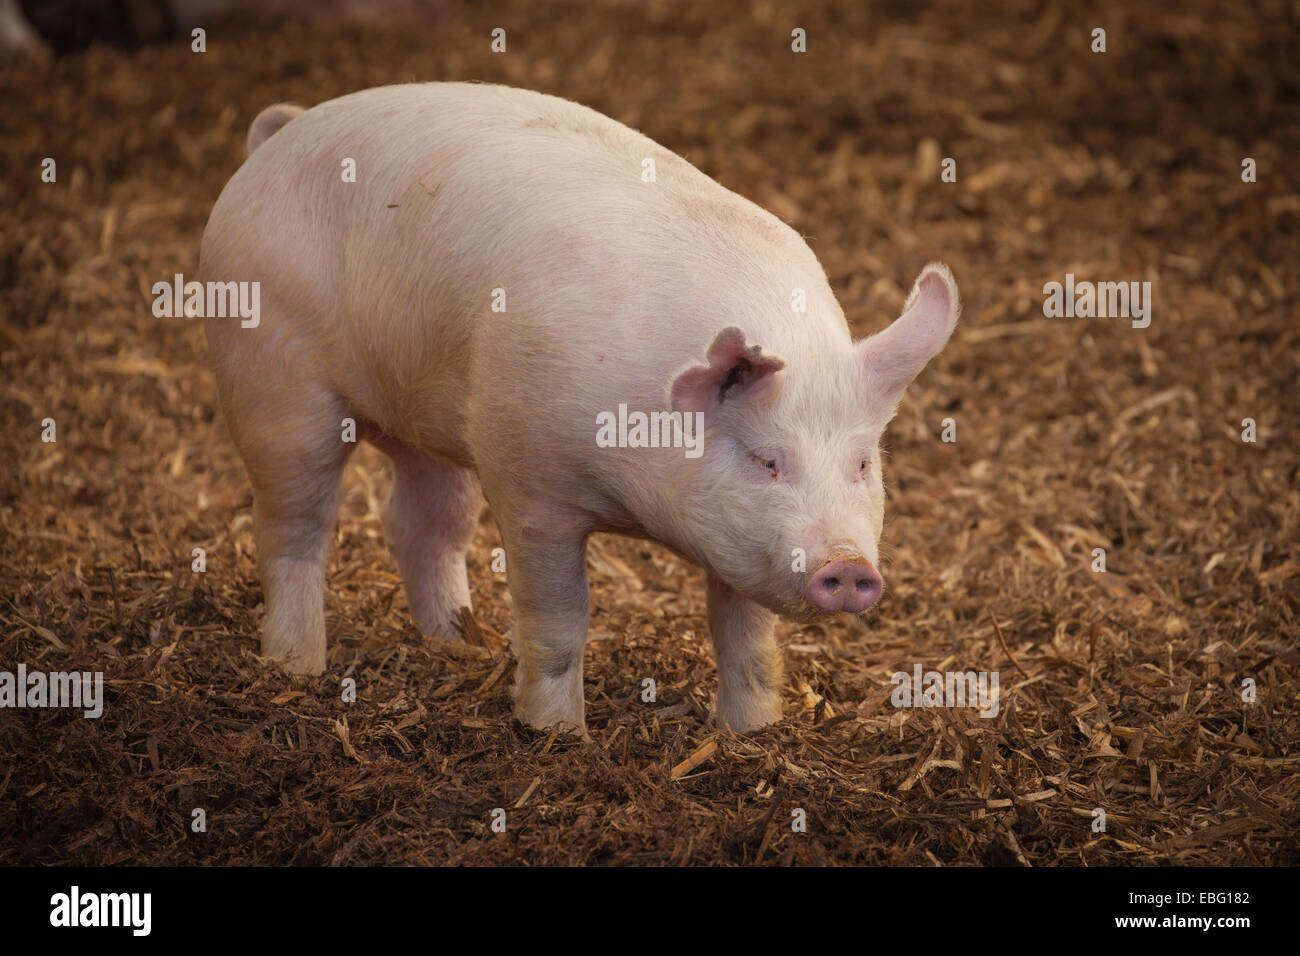 Finisher hog. ISU Swine Farm. Ames, Iowa. Stock Photo